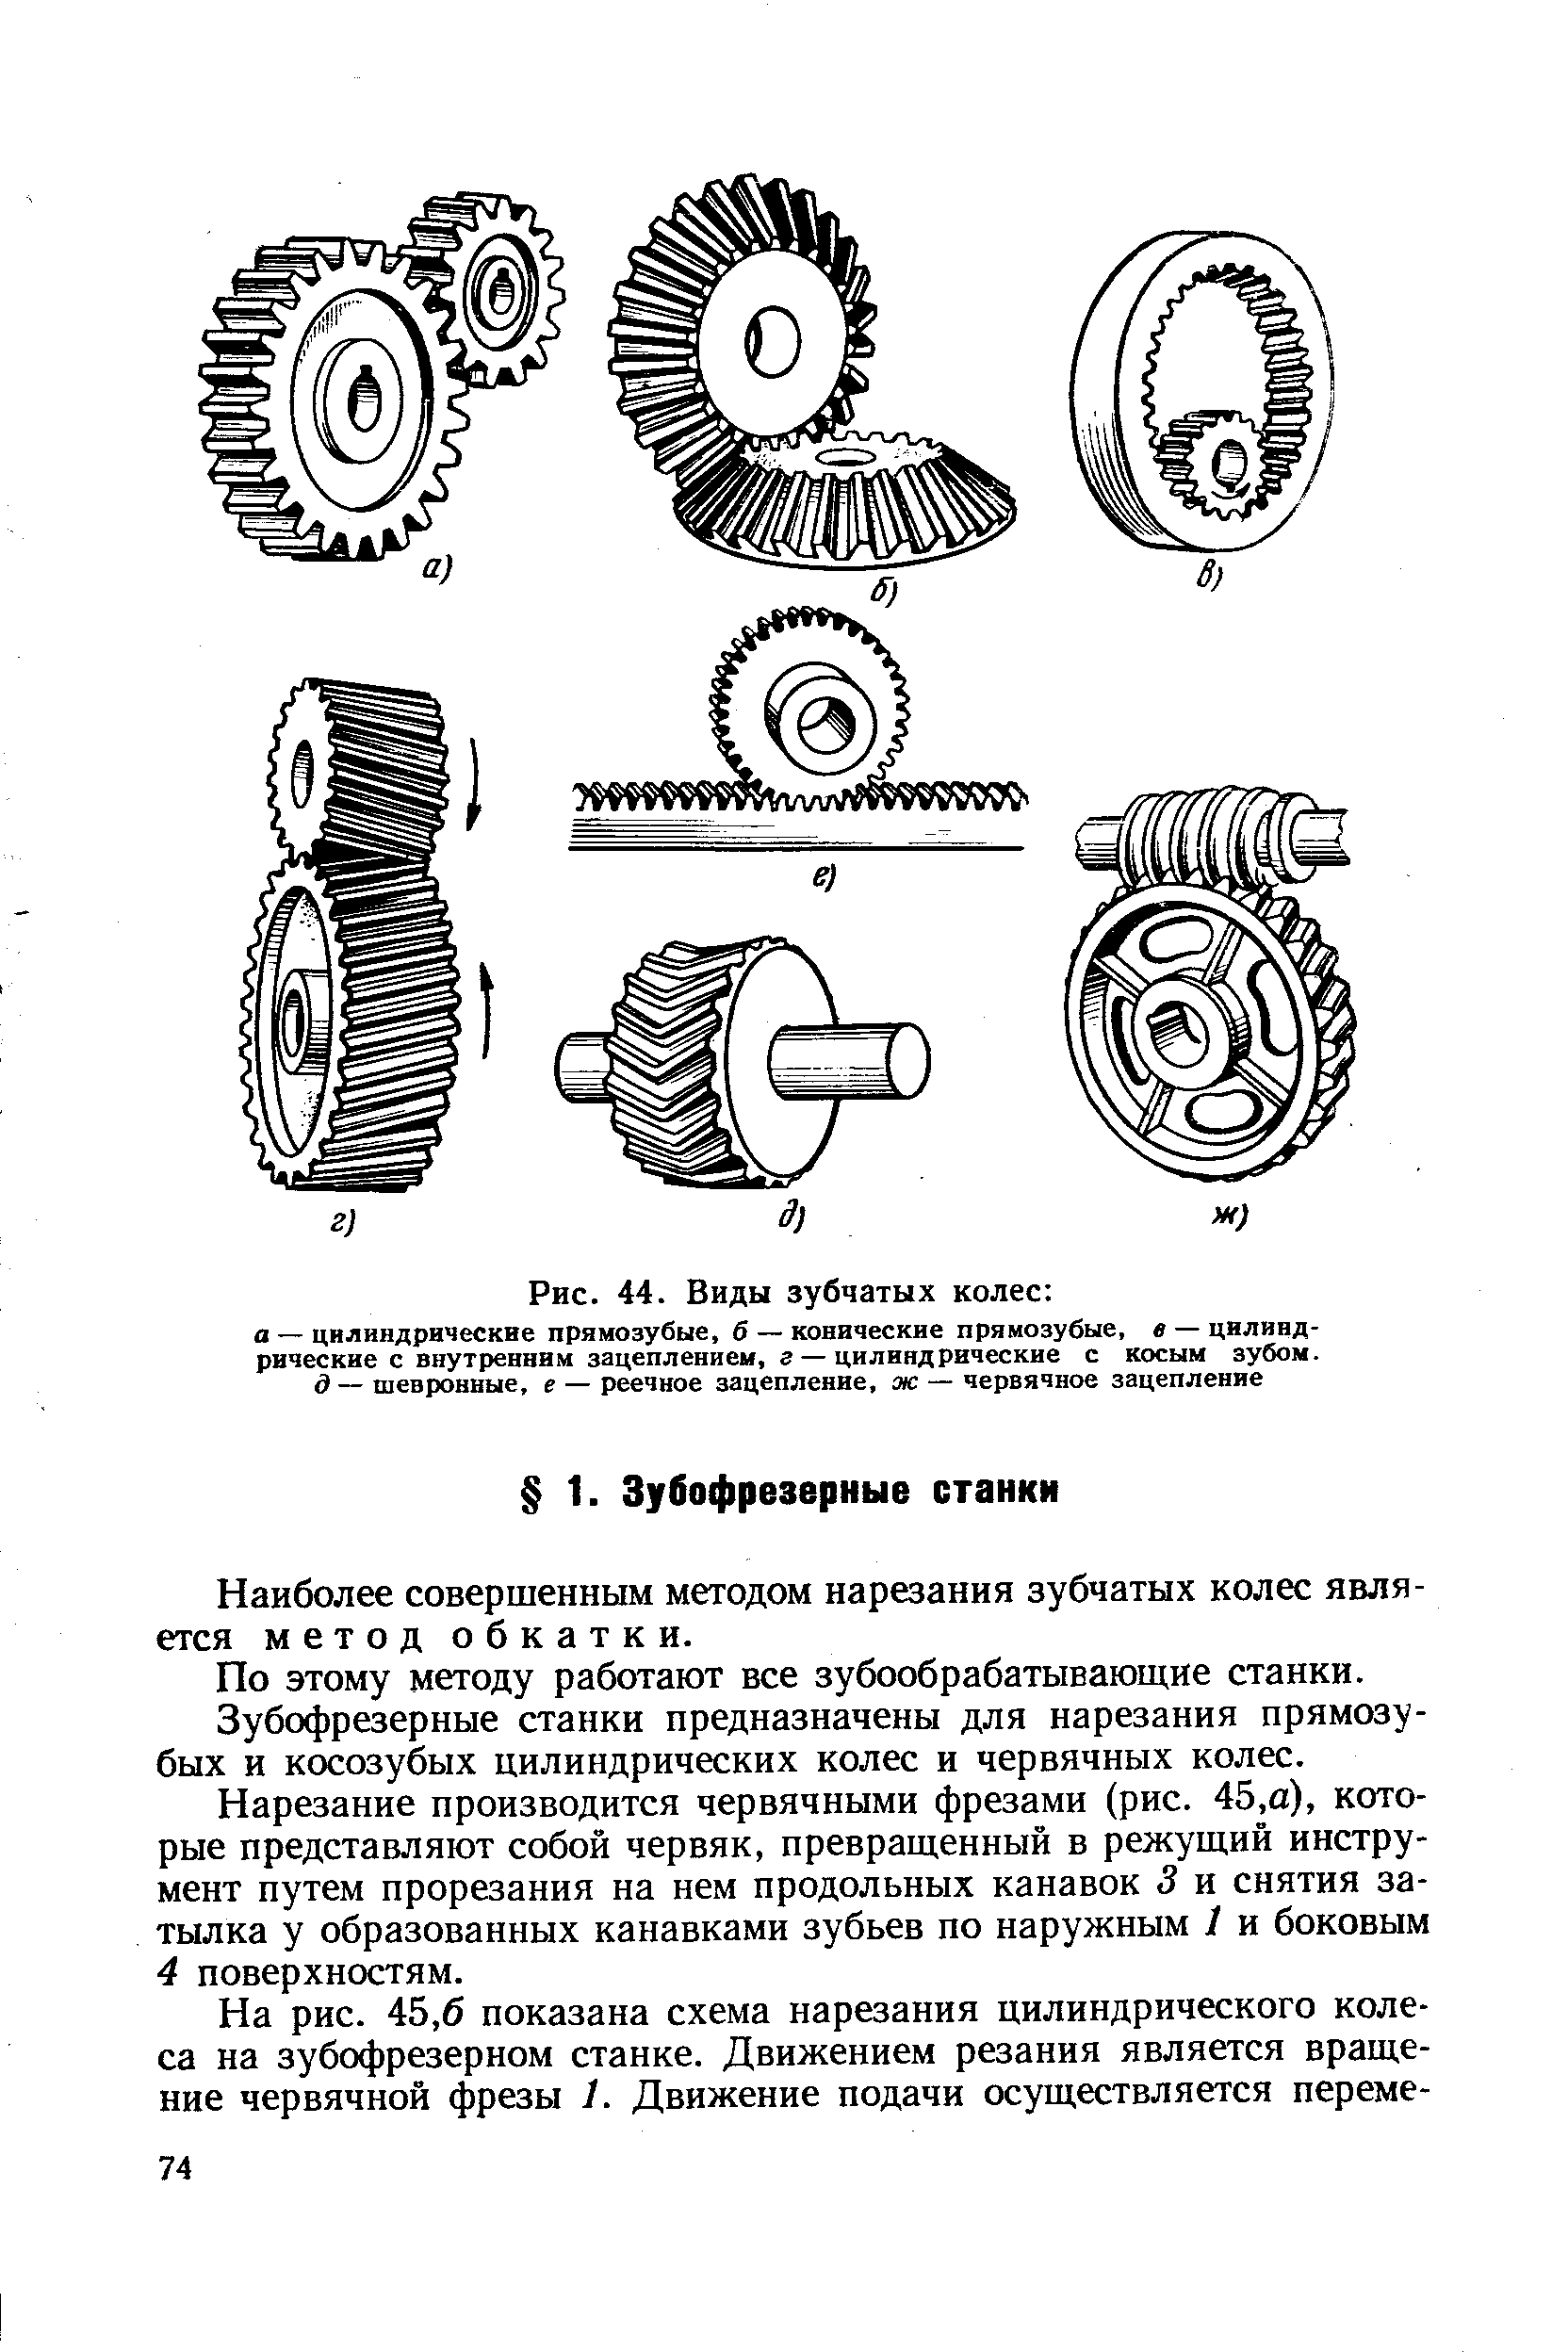 Схема нарезания косозубых цилиндрических колес